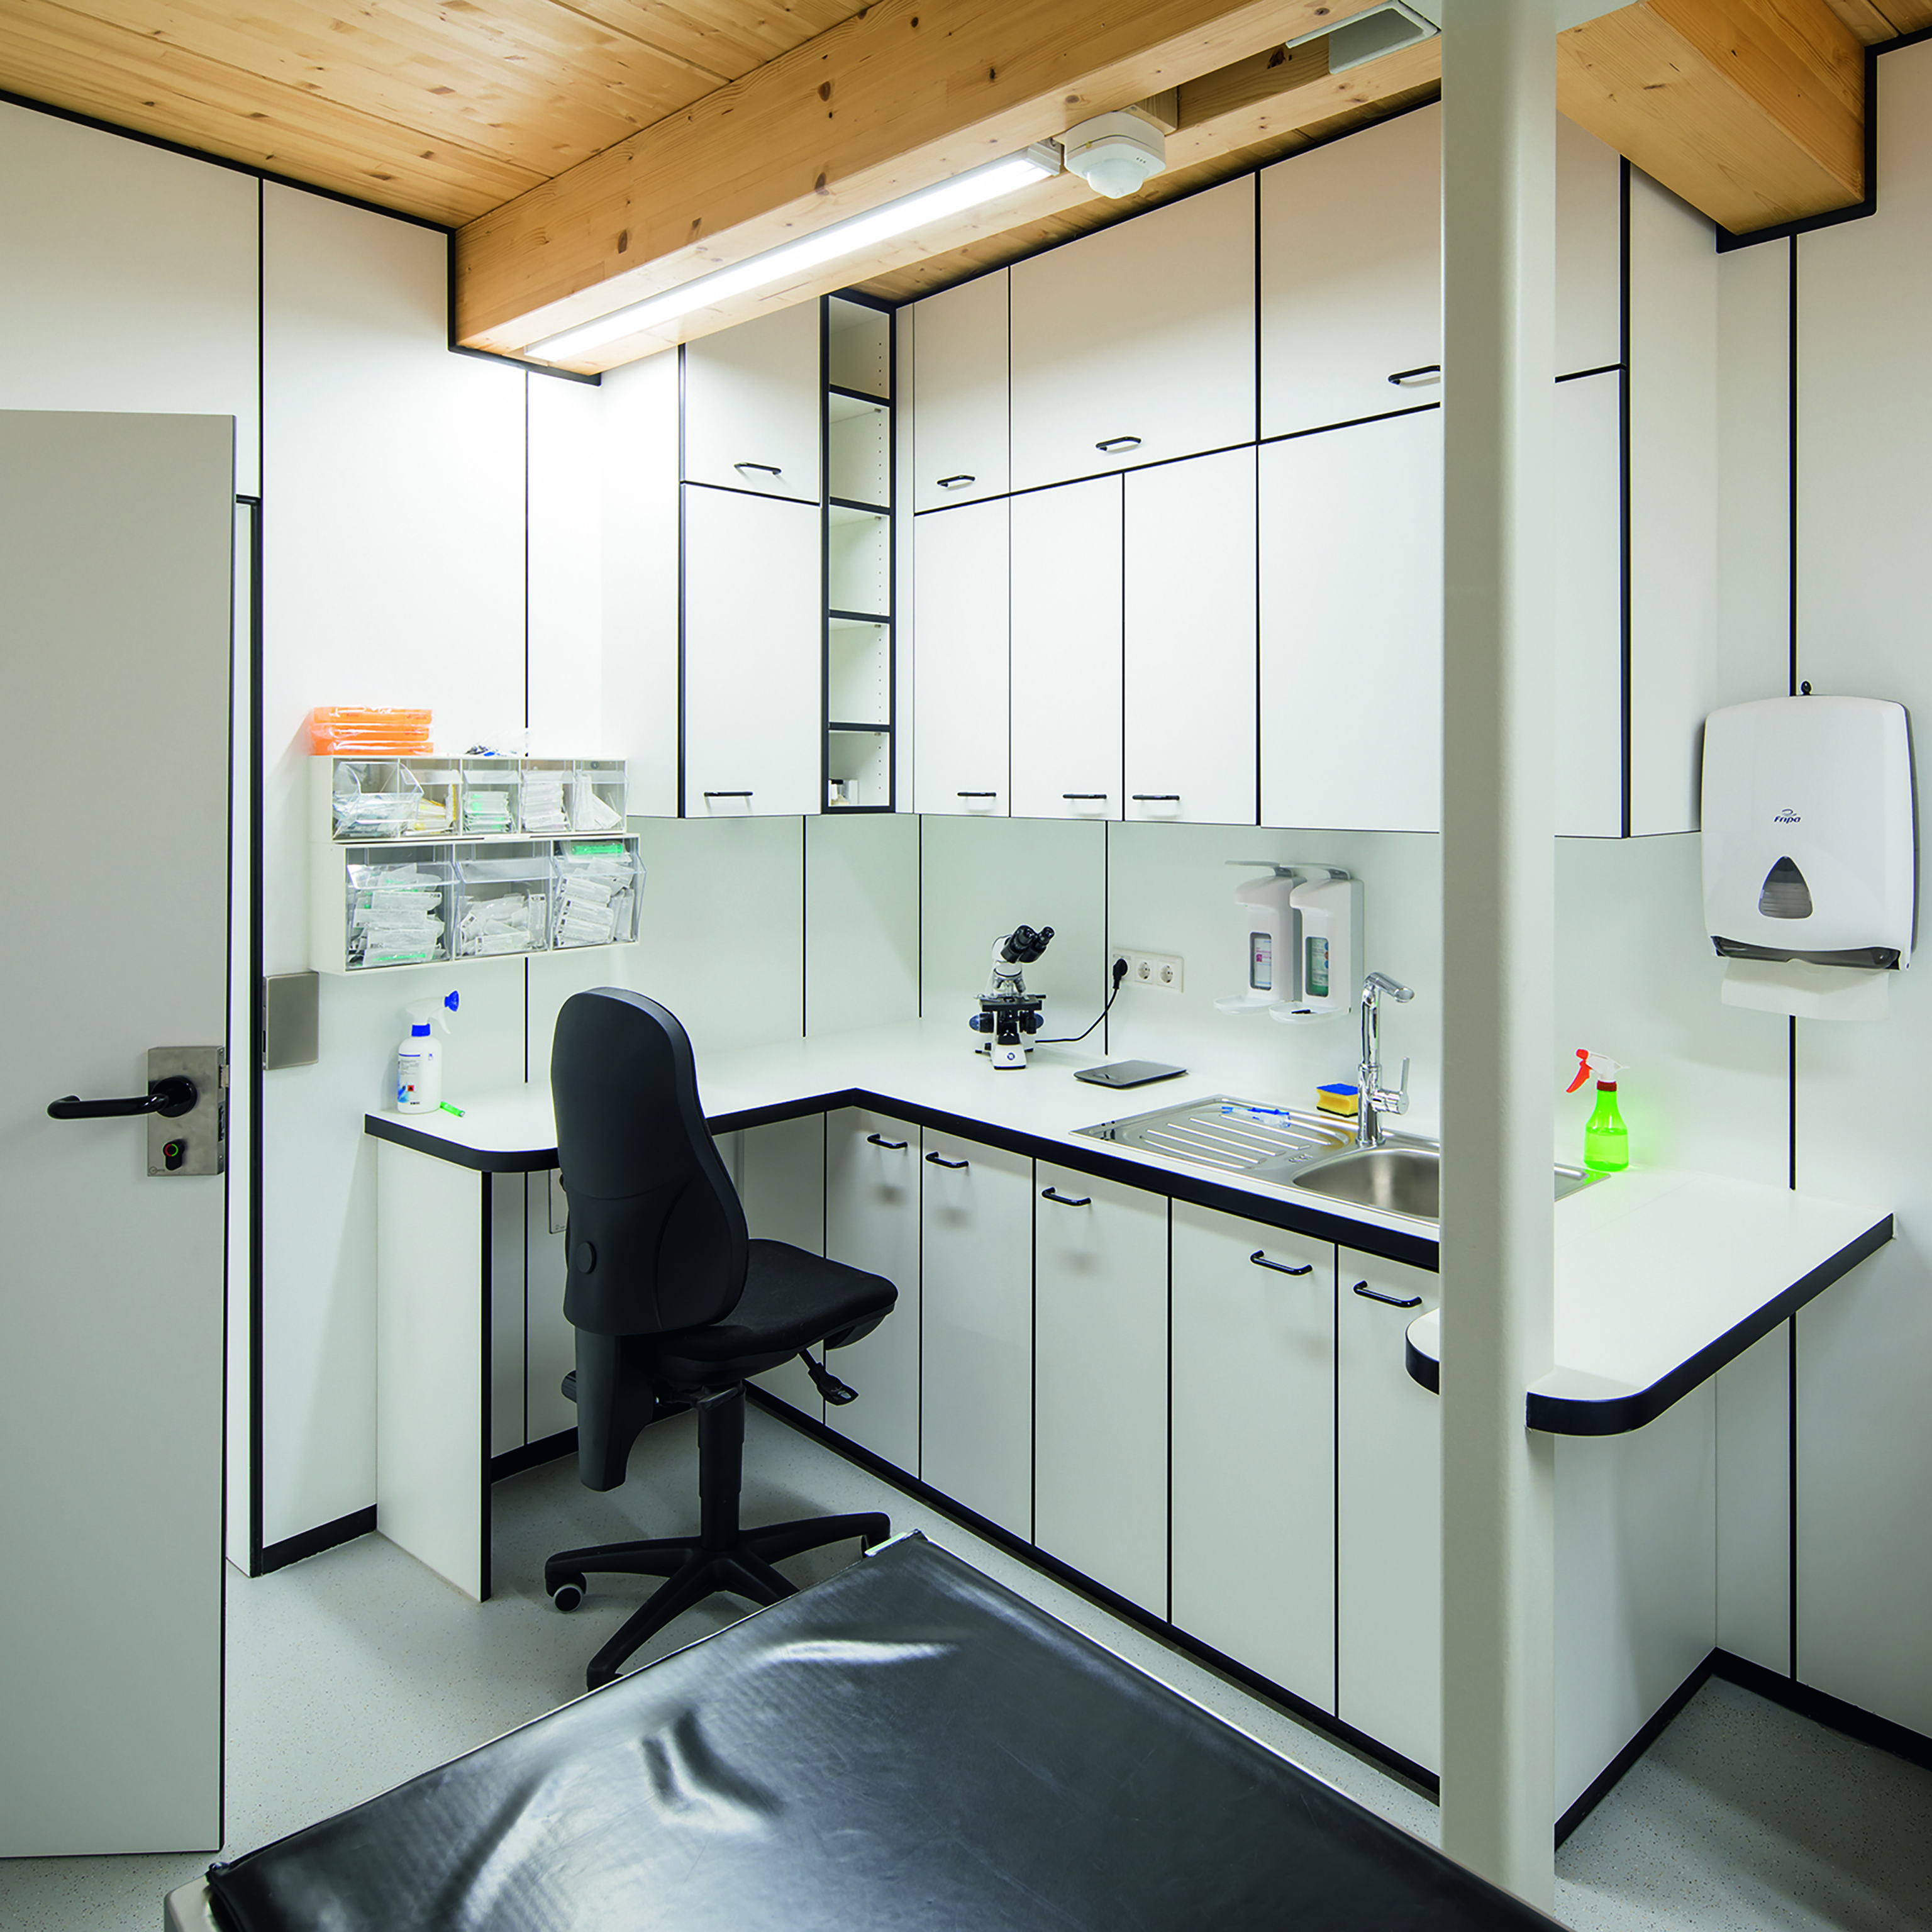 Az antibakteriális felületi tulajdonság a laboratóriumokban is fontos.